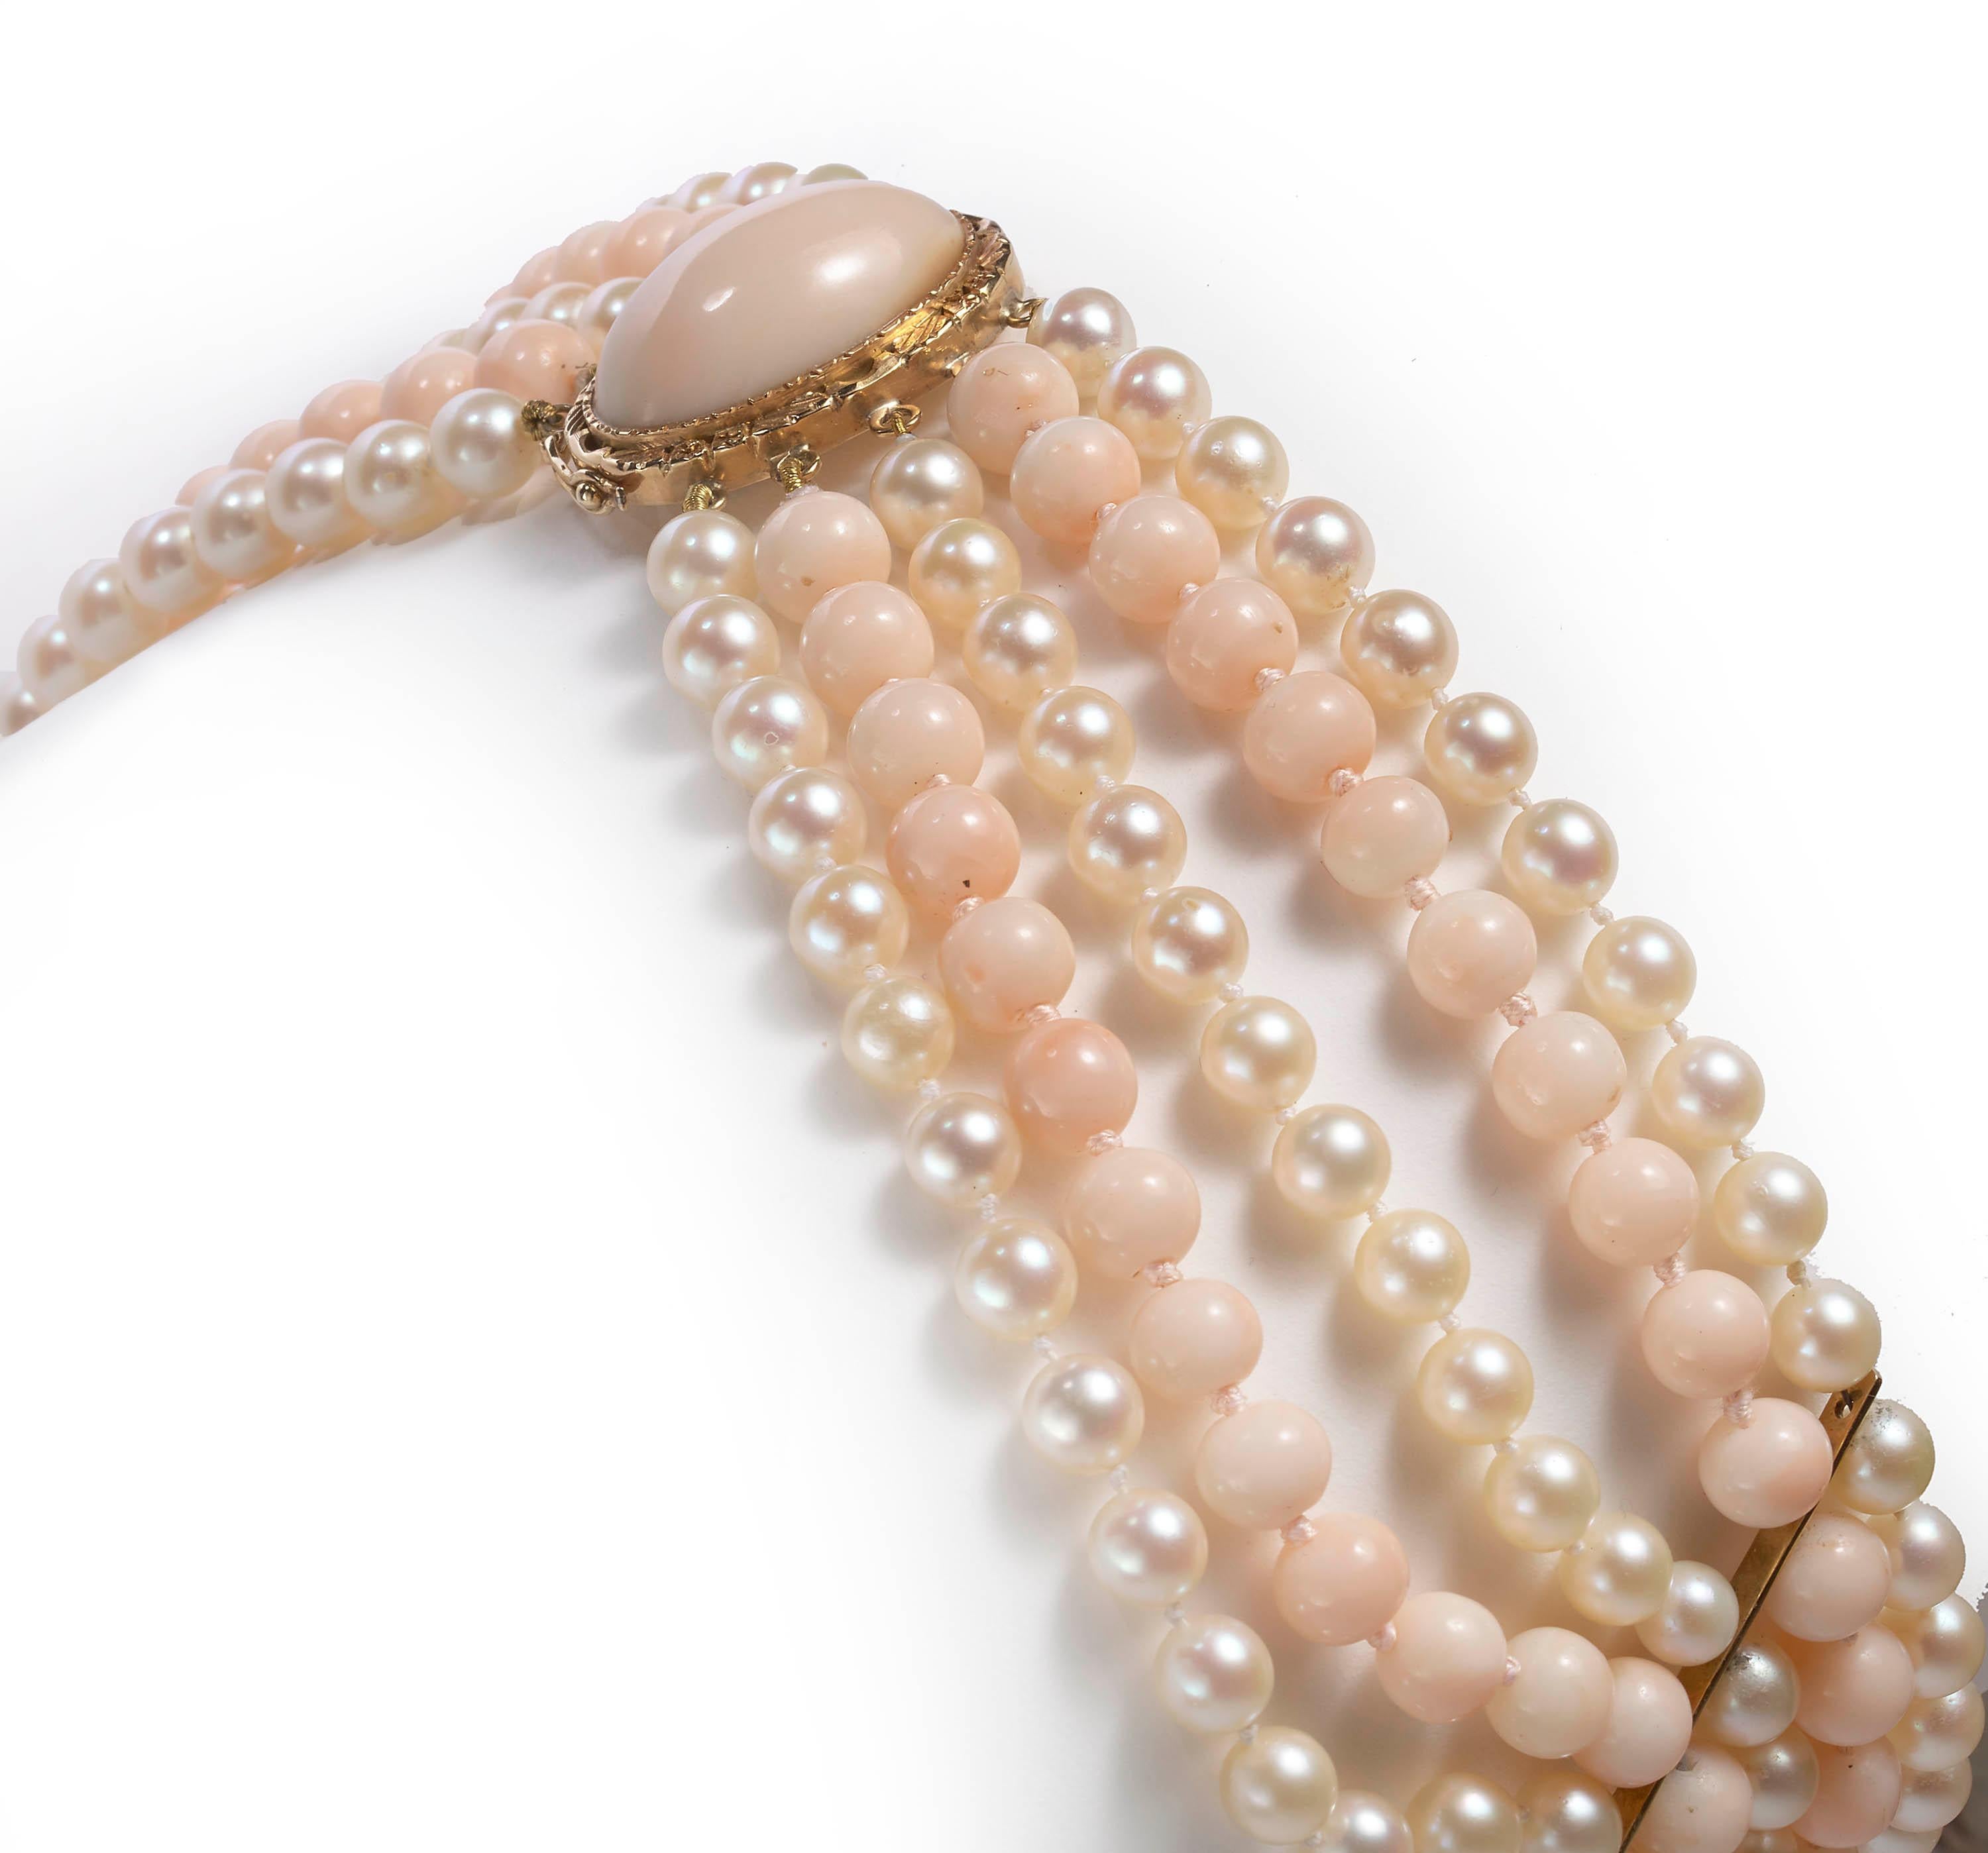 Eine fünfreihige Vintage-Halskette, bestehend aus drei Reihen weißer 6-mm-Zuchtperlen und zwei Reihen runder 8-mm-Perlen aus blassrosa Korallen, mit zwei Abstandshaltern aus 18-karätigem Gelbgold, aufgereiht an einem ovalen Verschluss, besetzt mit